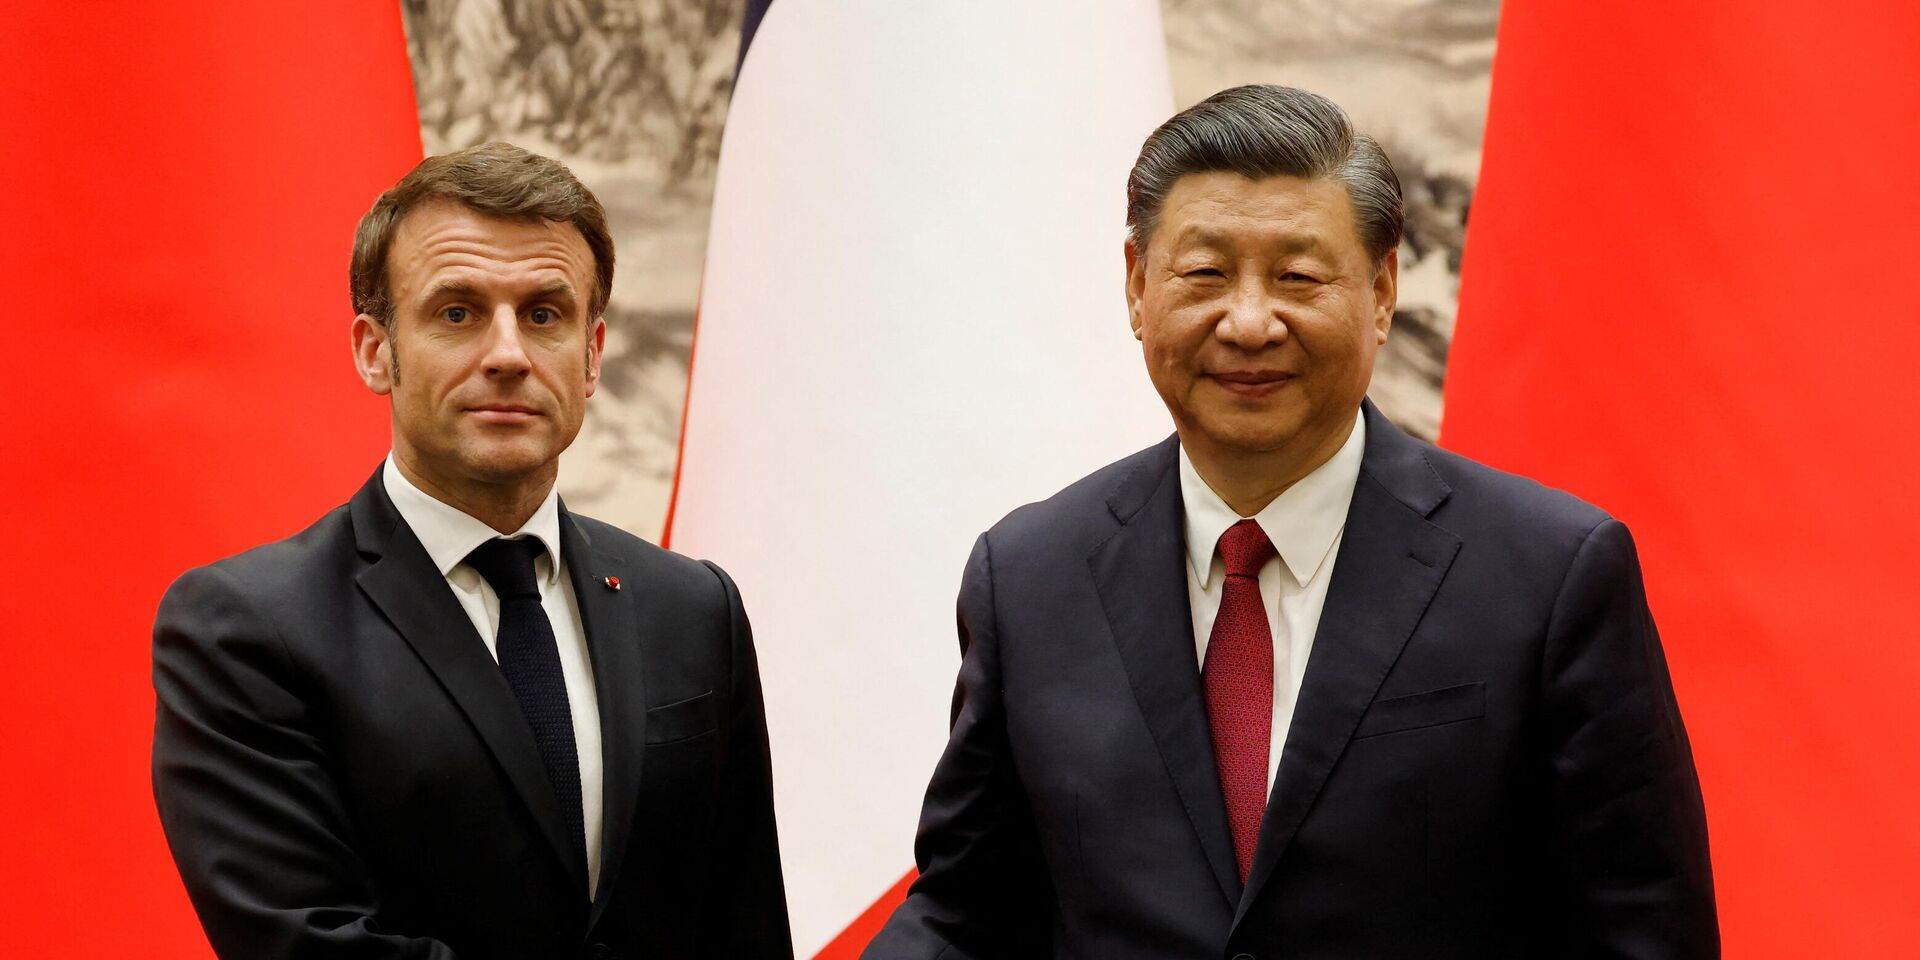 Председатель Китая Си Цзиньпин и президент Франции Эммануэль Макрон в Пекине, 6 апреля 2023 года - ИноСМИ, 1920, 12.04.2023